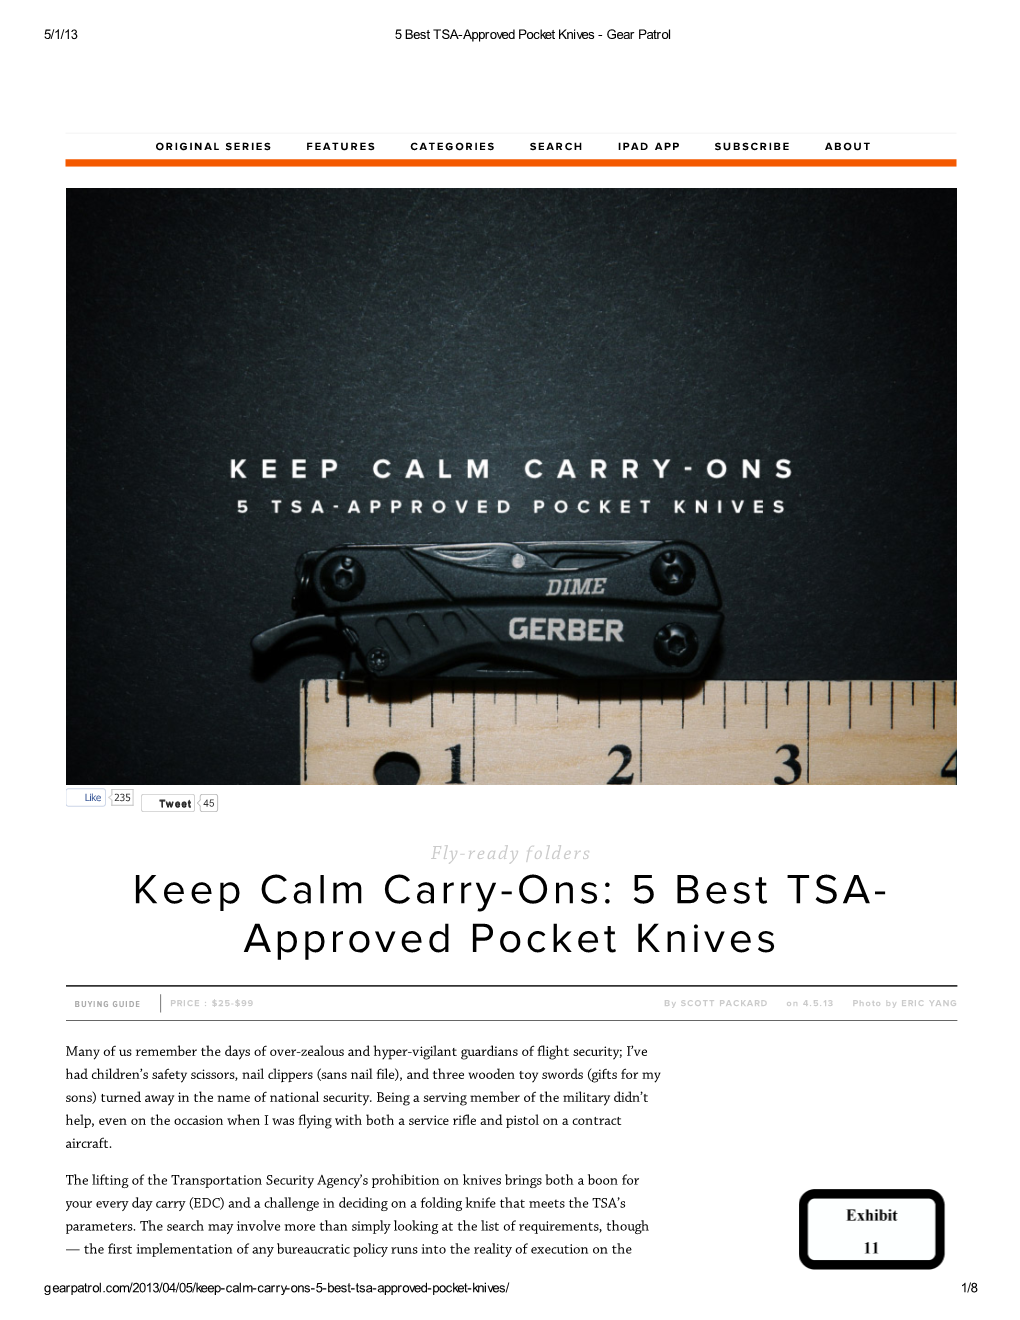 Approved Pocket Knives - Gear Patrol